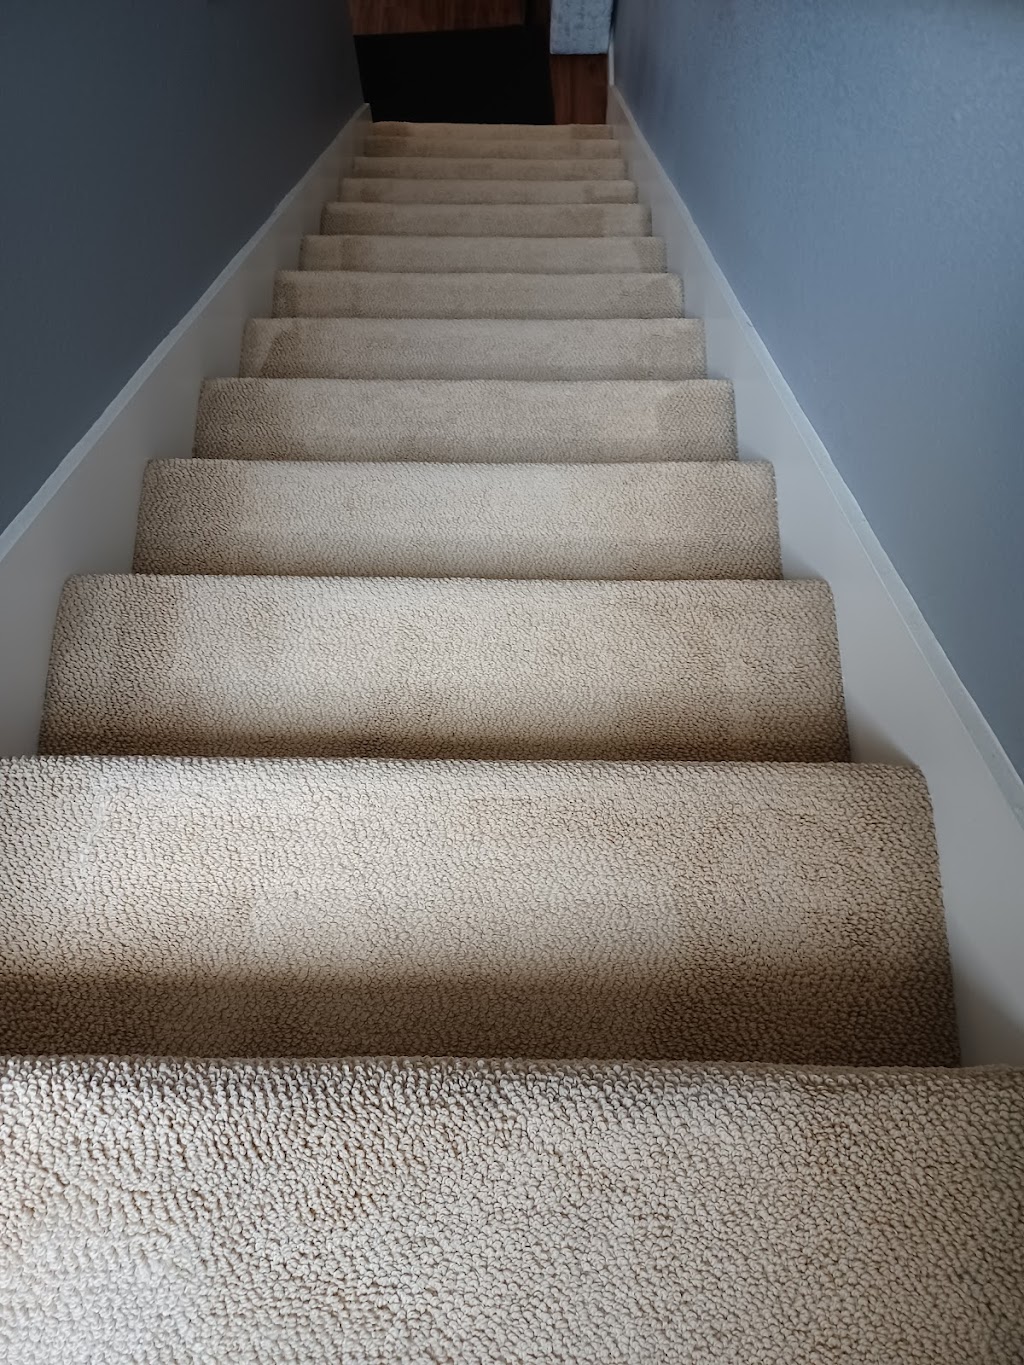 Carpet Cleaning Steam Clean | 31770 Alvarado Blvd, Union City, CA 94587 | Phone: (510) 585-1010